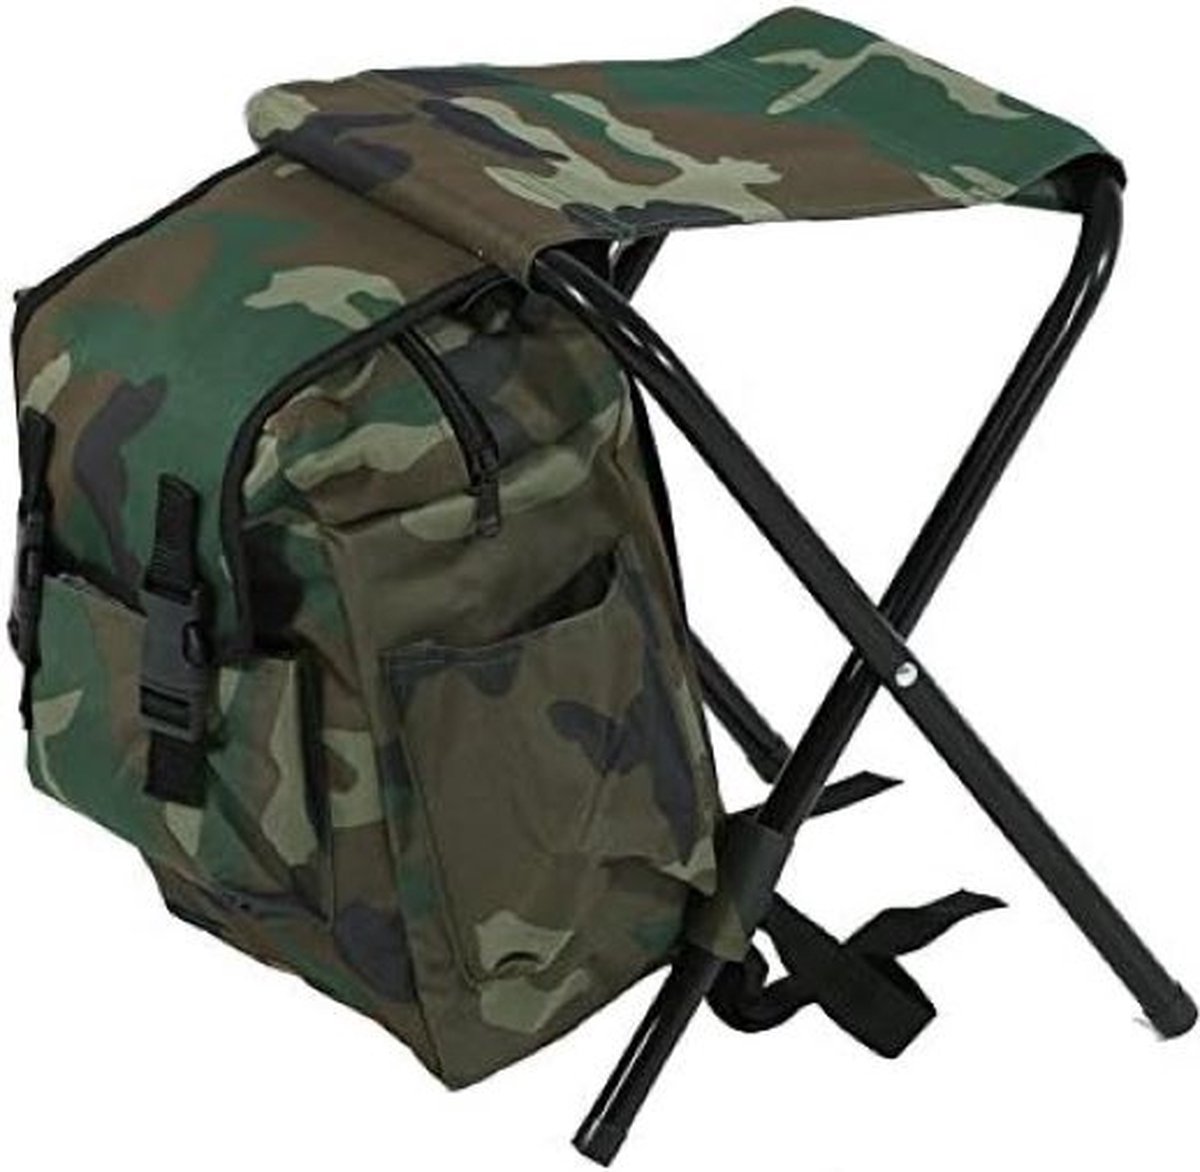 Outdoor stoel, Draagbare kruk/zitzak + tas voor vissen/camping/reizen, camouflage